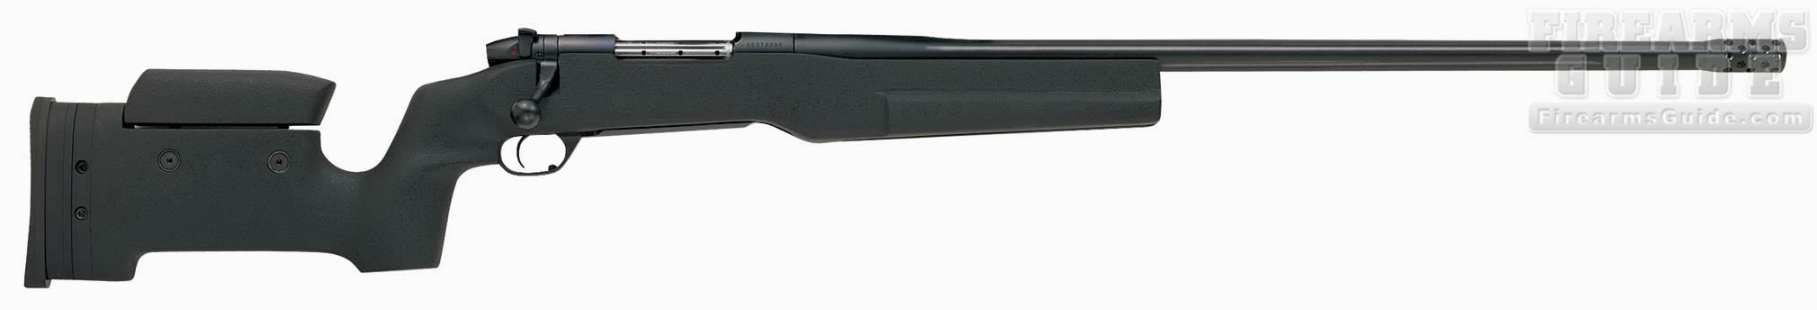 Weatherby Mark V TRR Magnum Custom